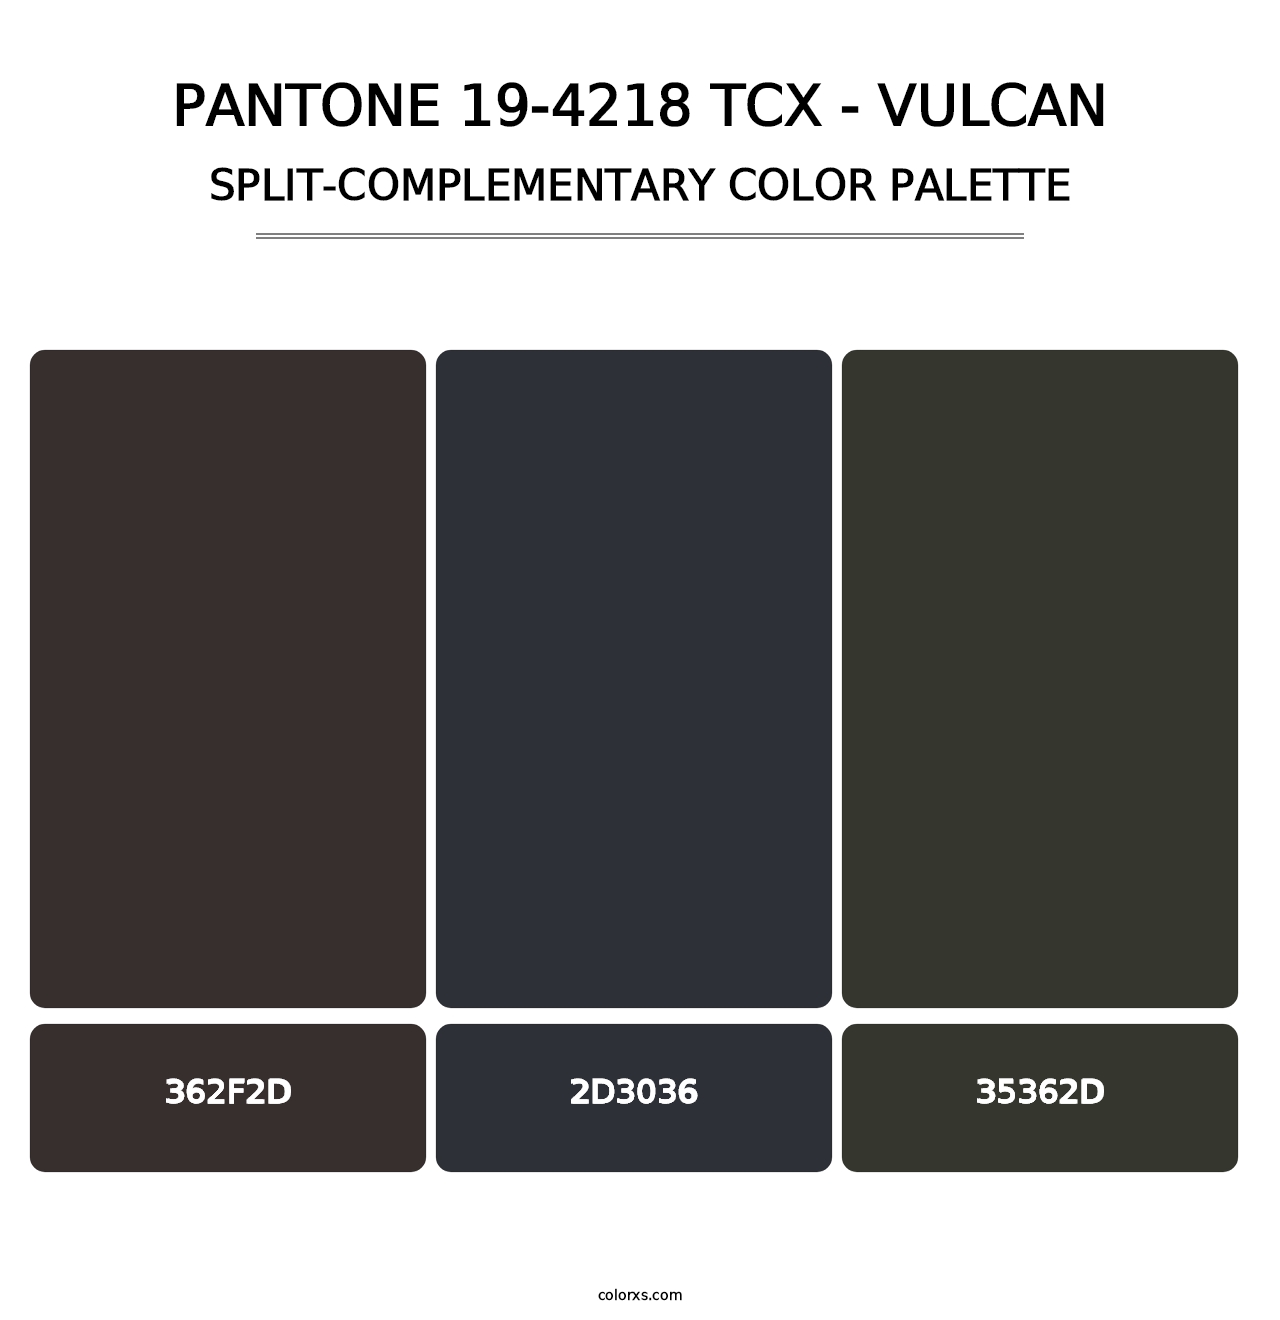 PANTONE 19-4218 TCX - Vulcan - Split-Complementary Color Palette